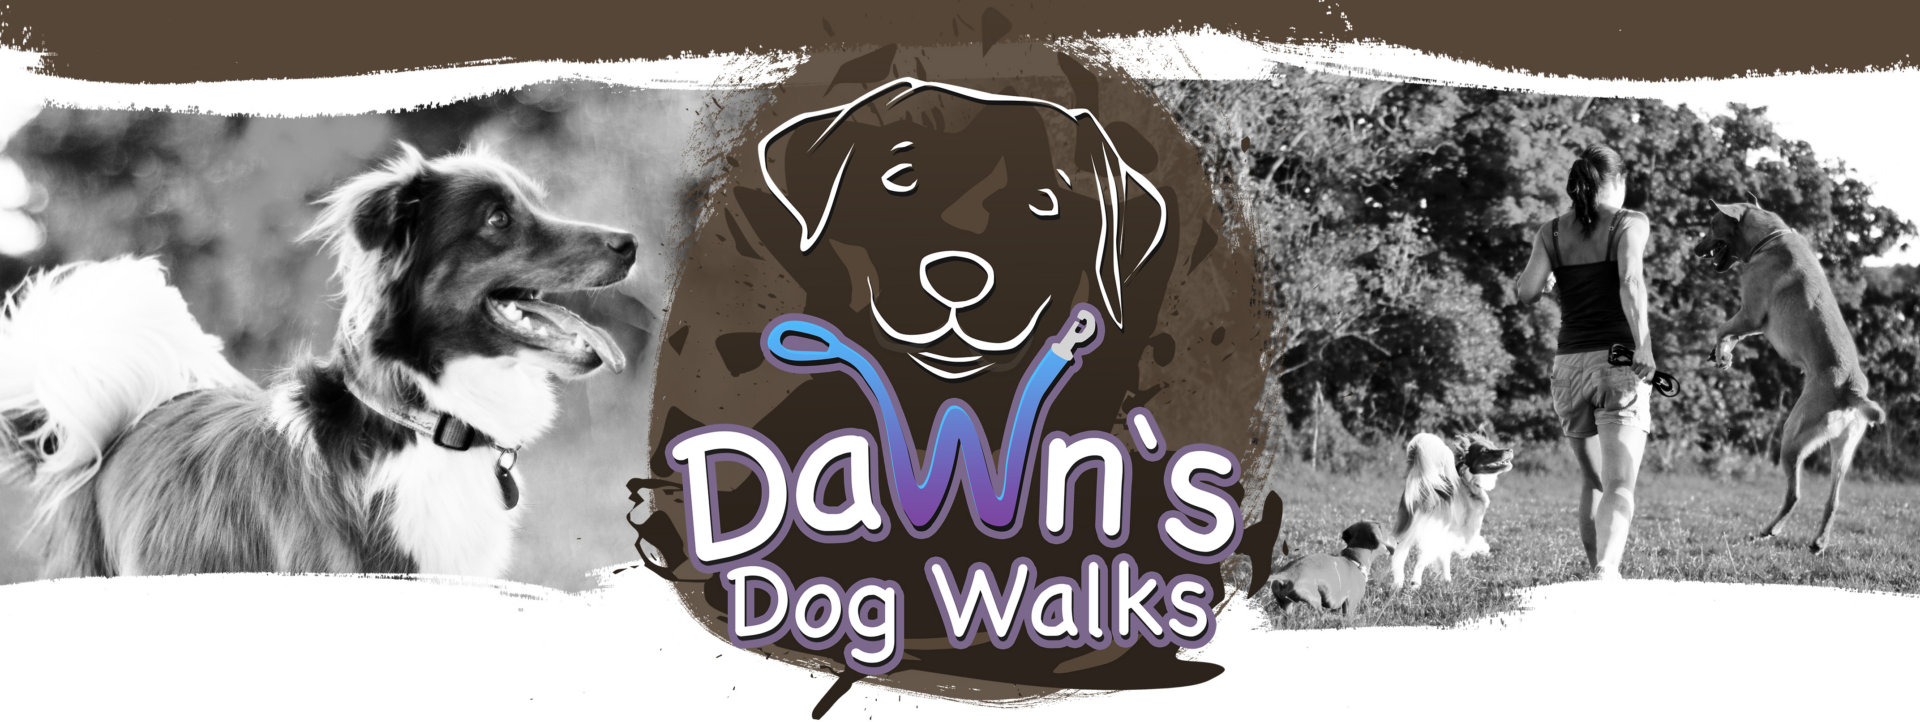 Dawns Dog Walks